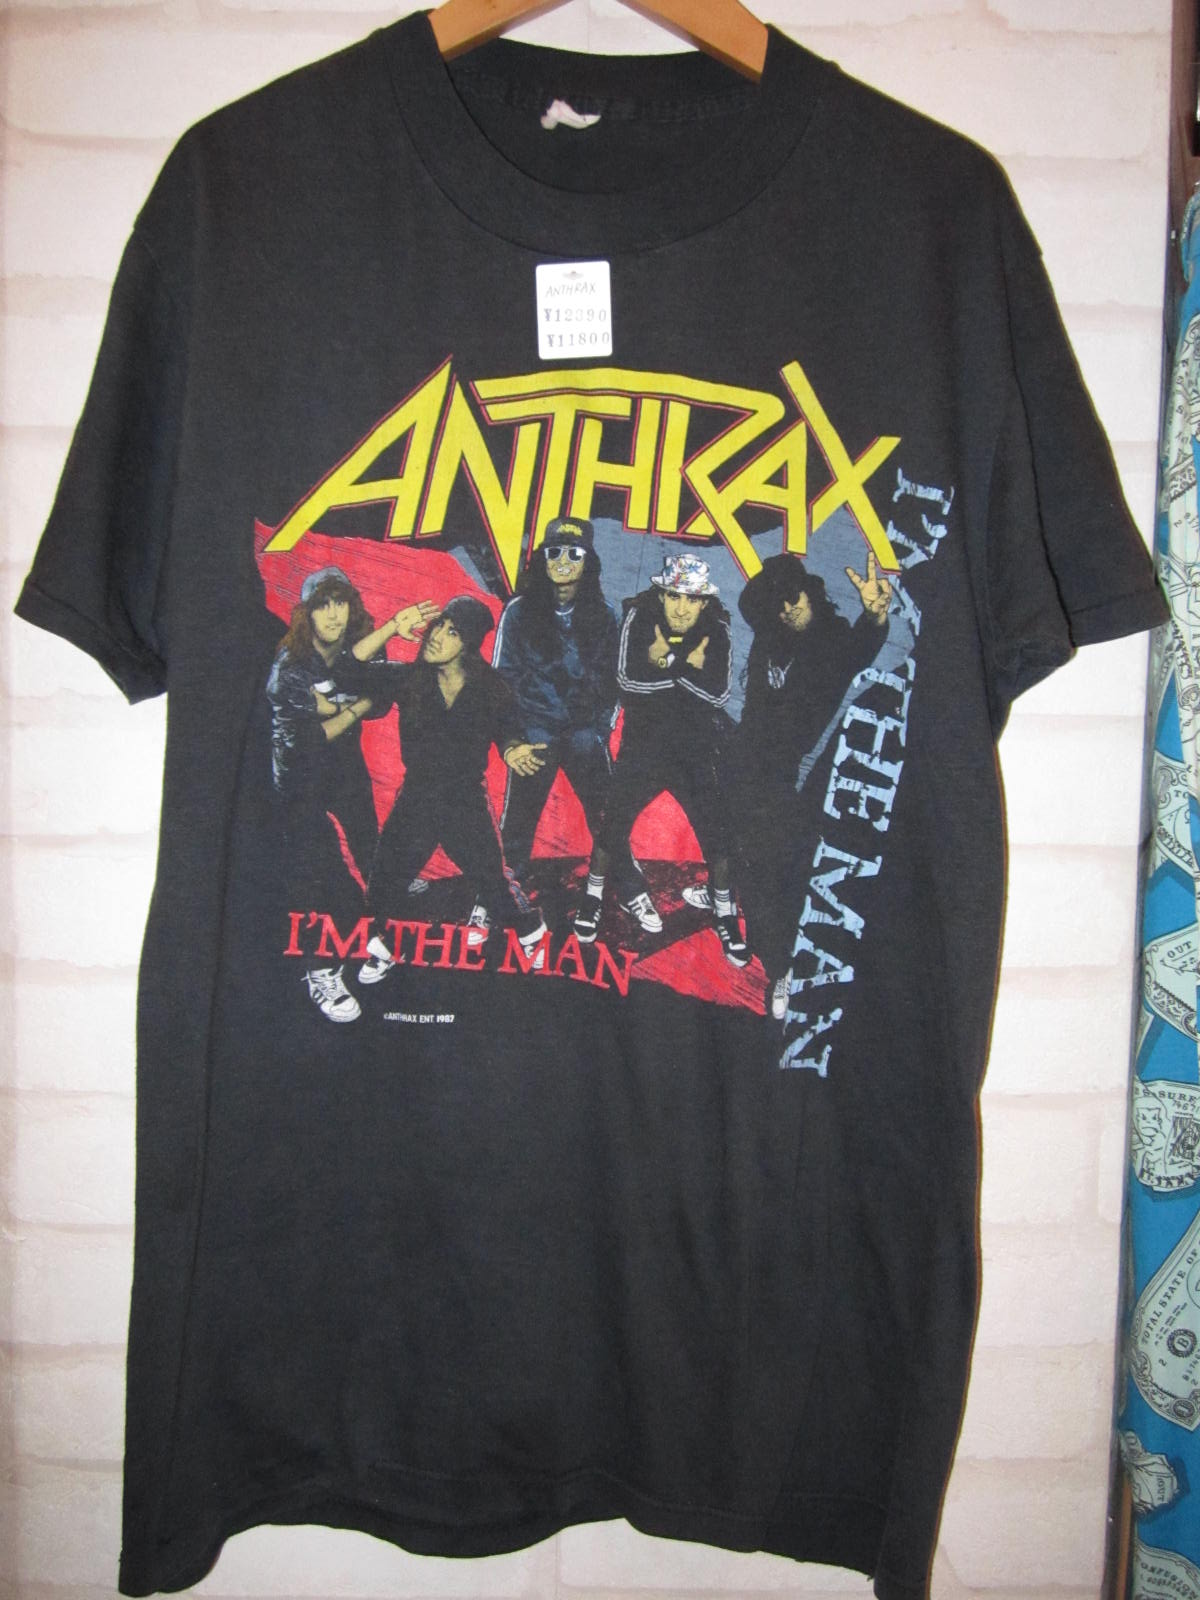 ANTHRAX (アンスラックス) I'M THE MAN Tシャツ 87年 : 高円寺・古着屋 